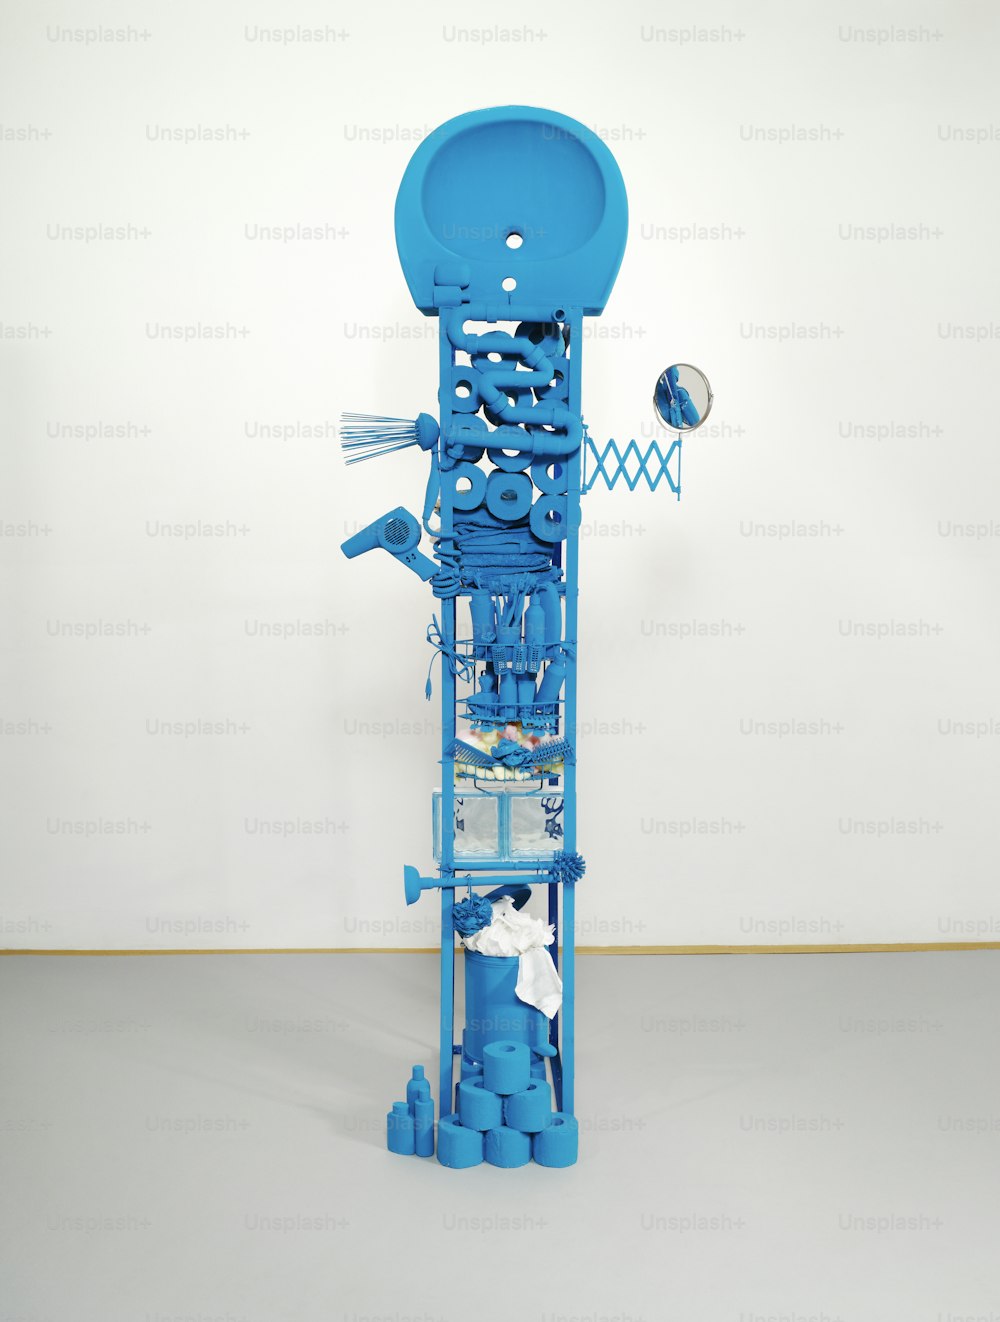 Una escultura hecha de tubos de plástico azul